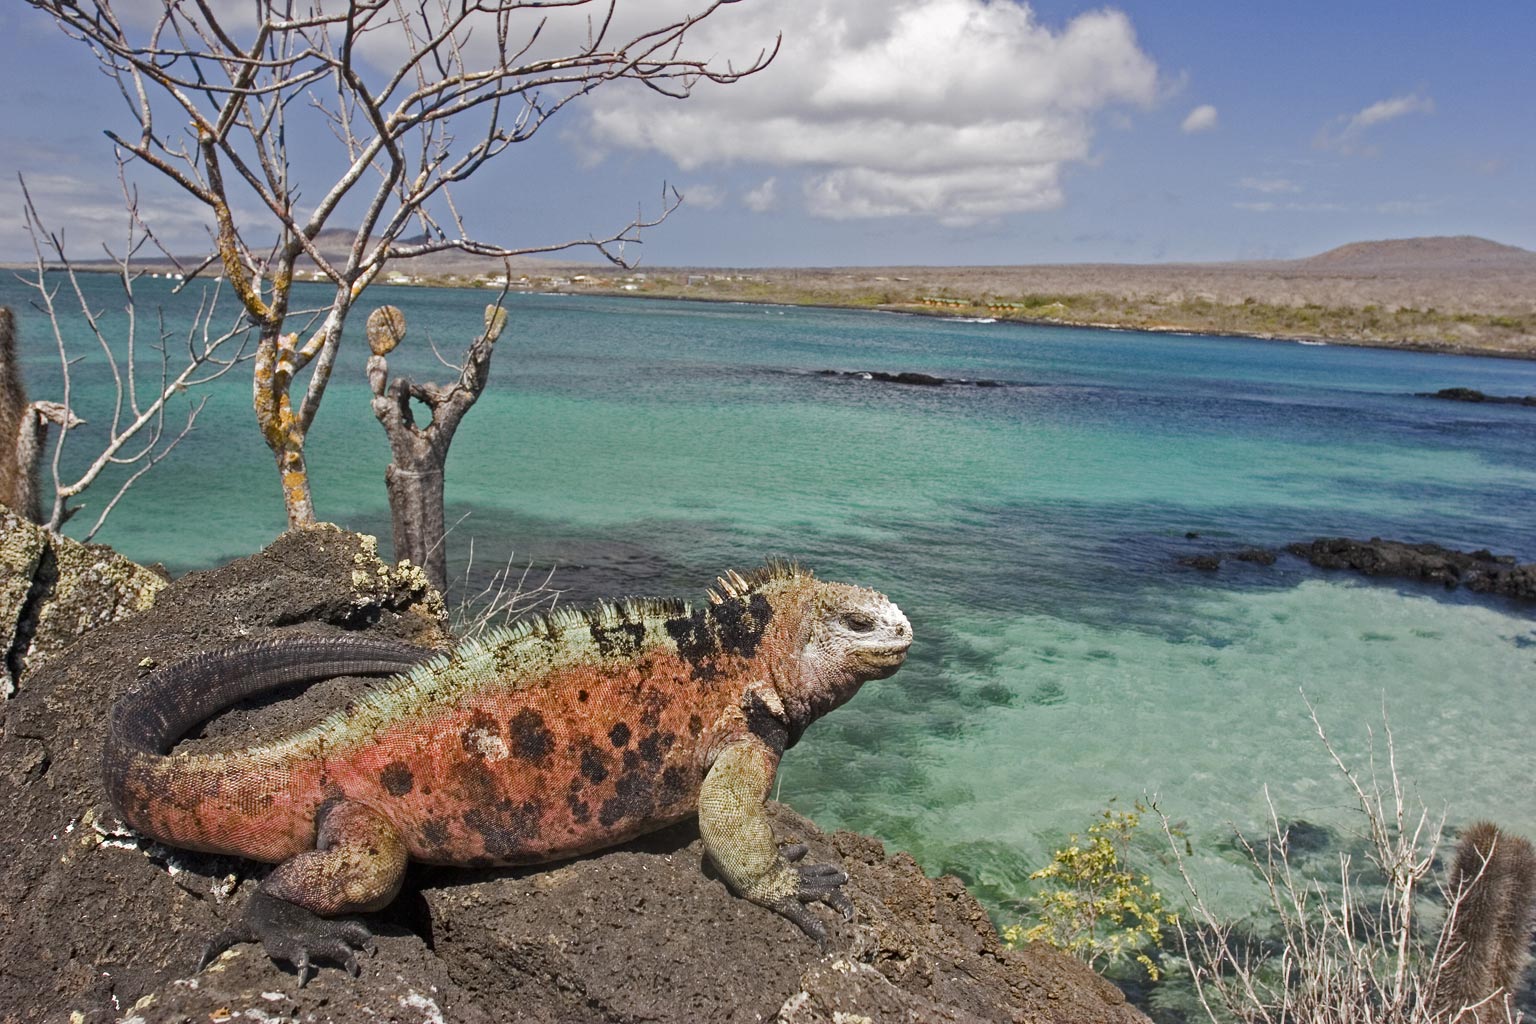 Galápagos Marine Reserve – Ecuador